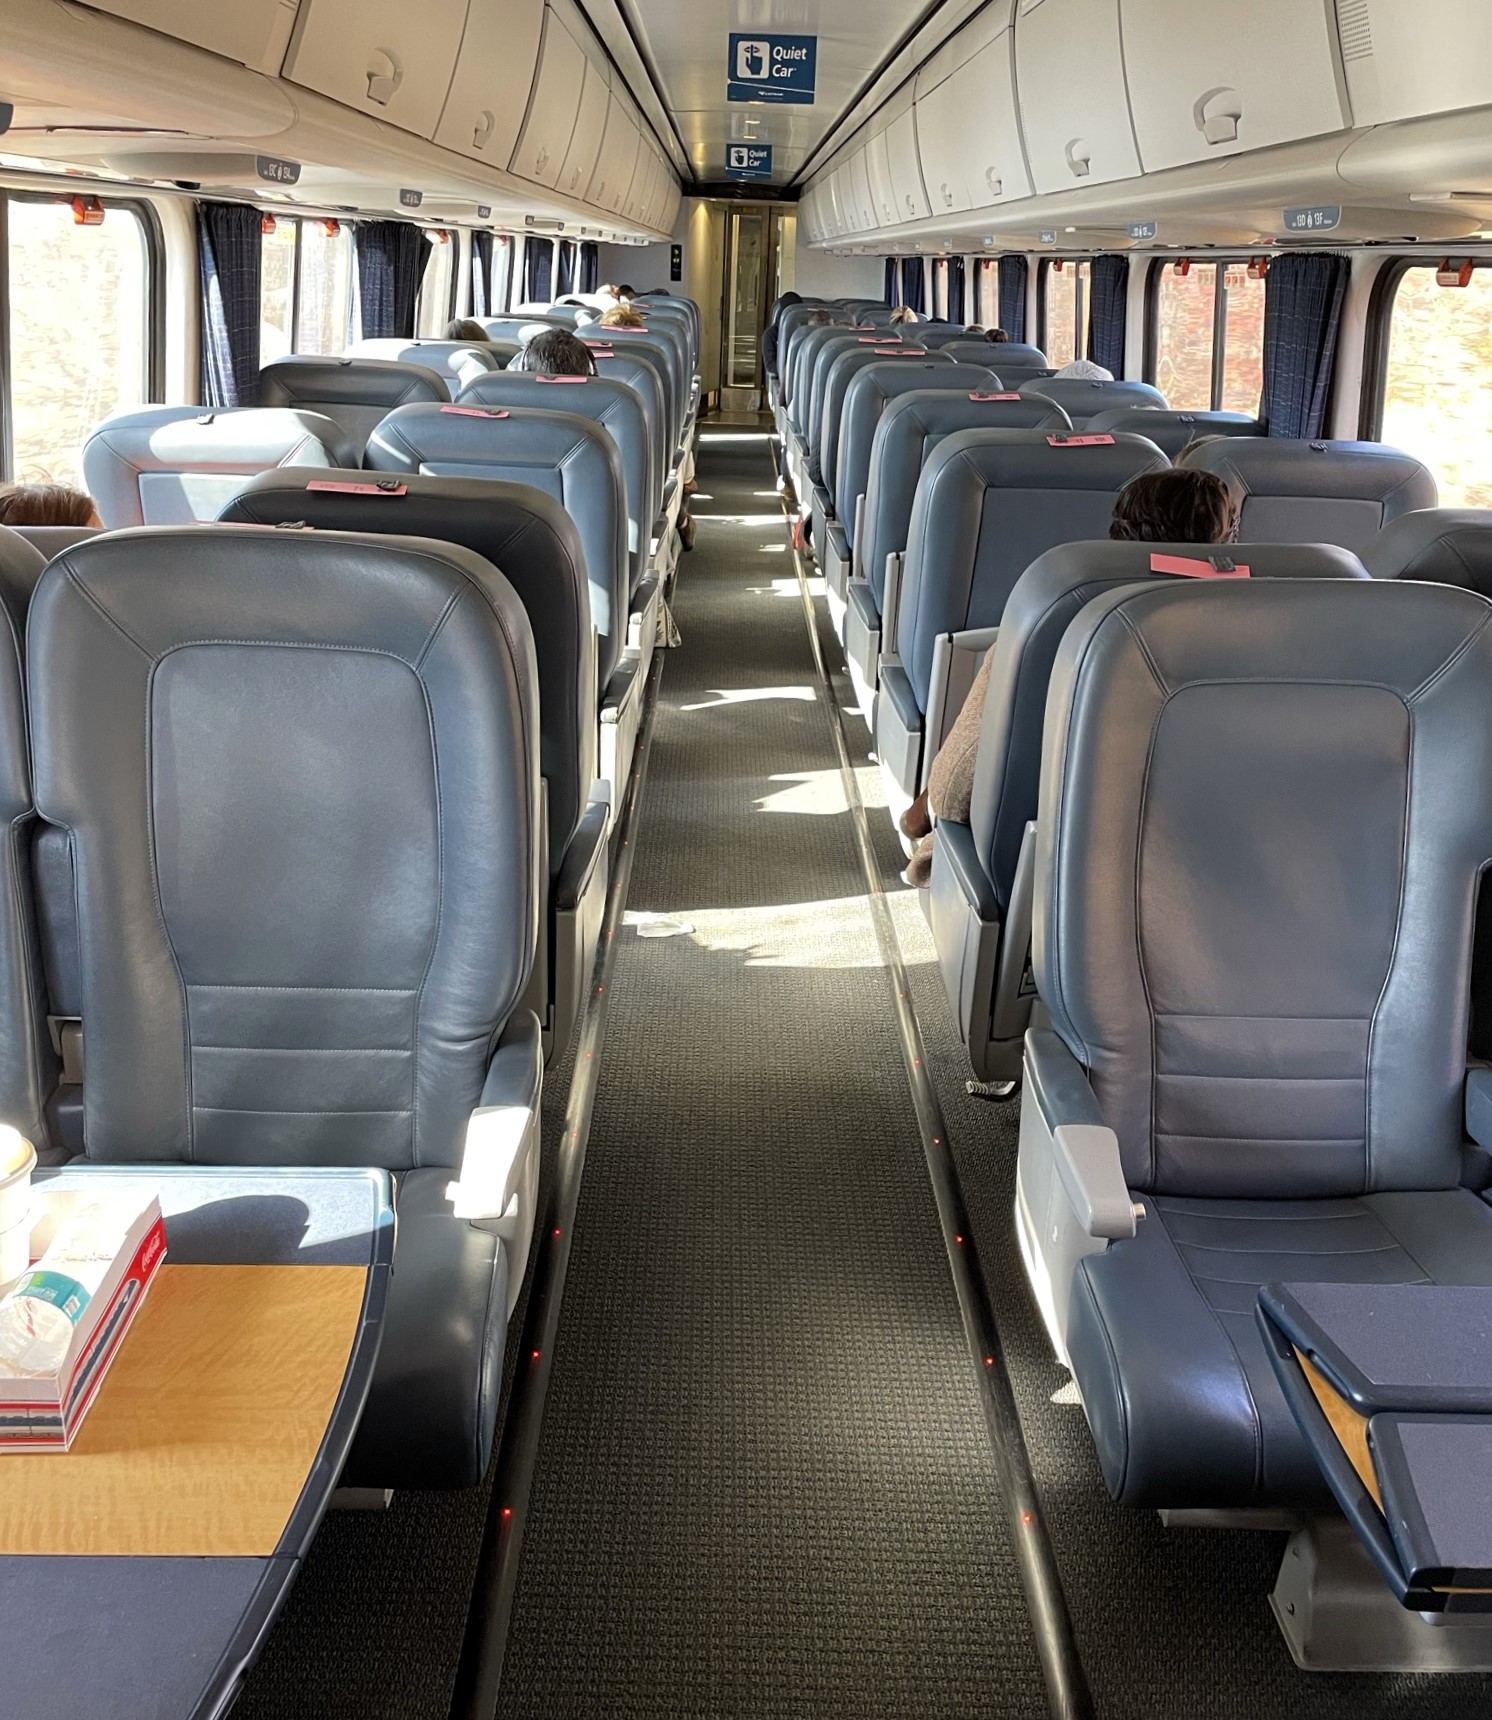 amtrak train first class seats